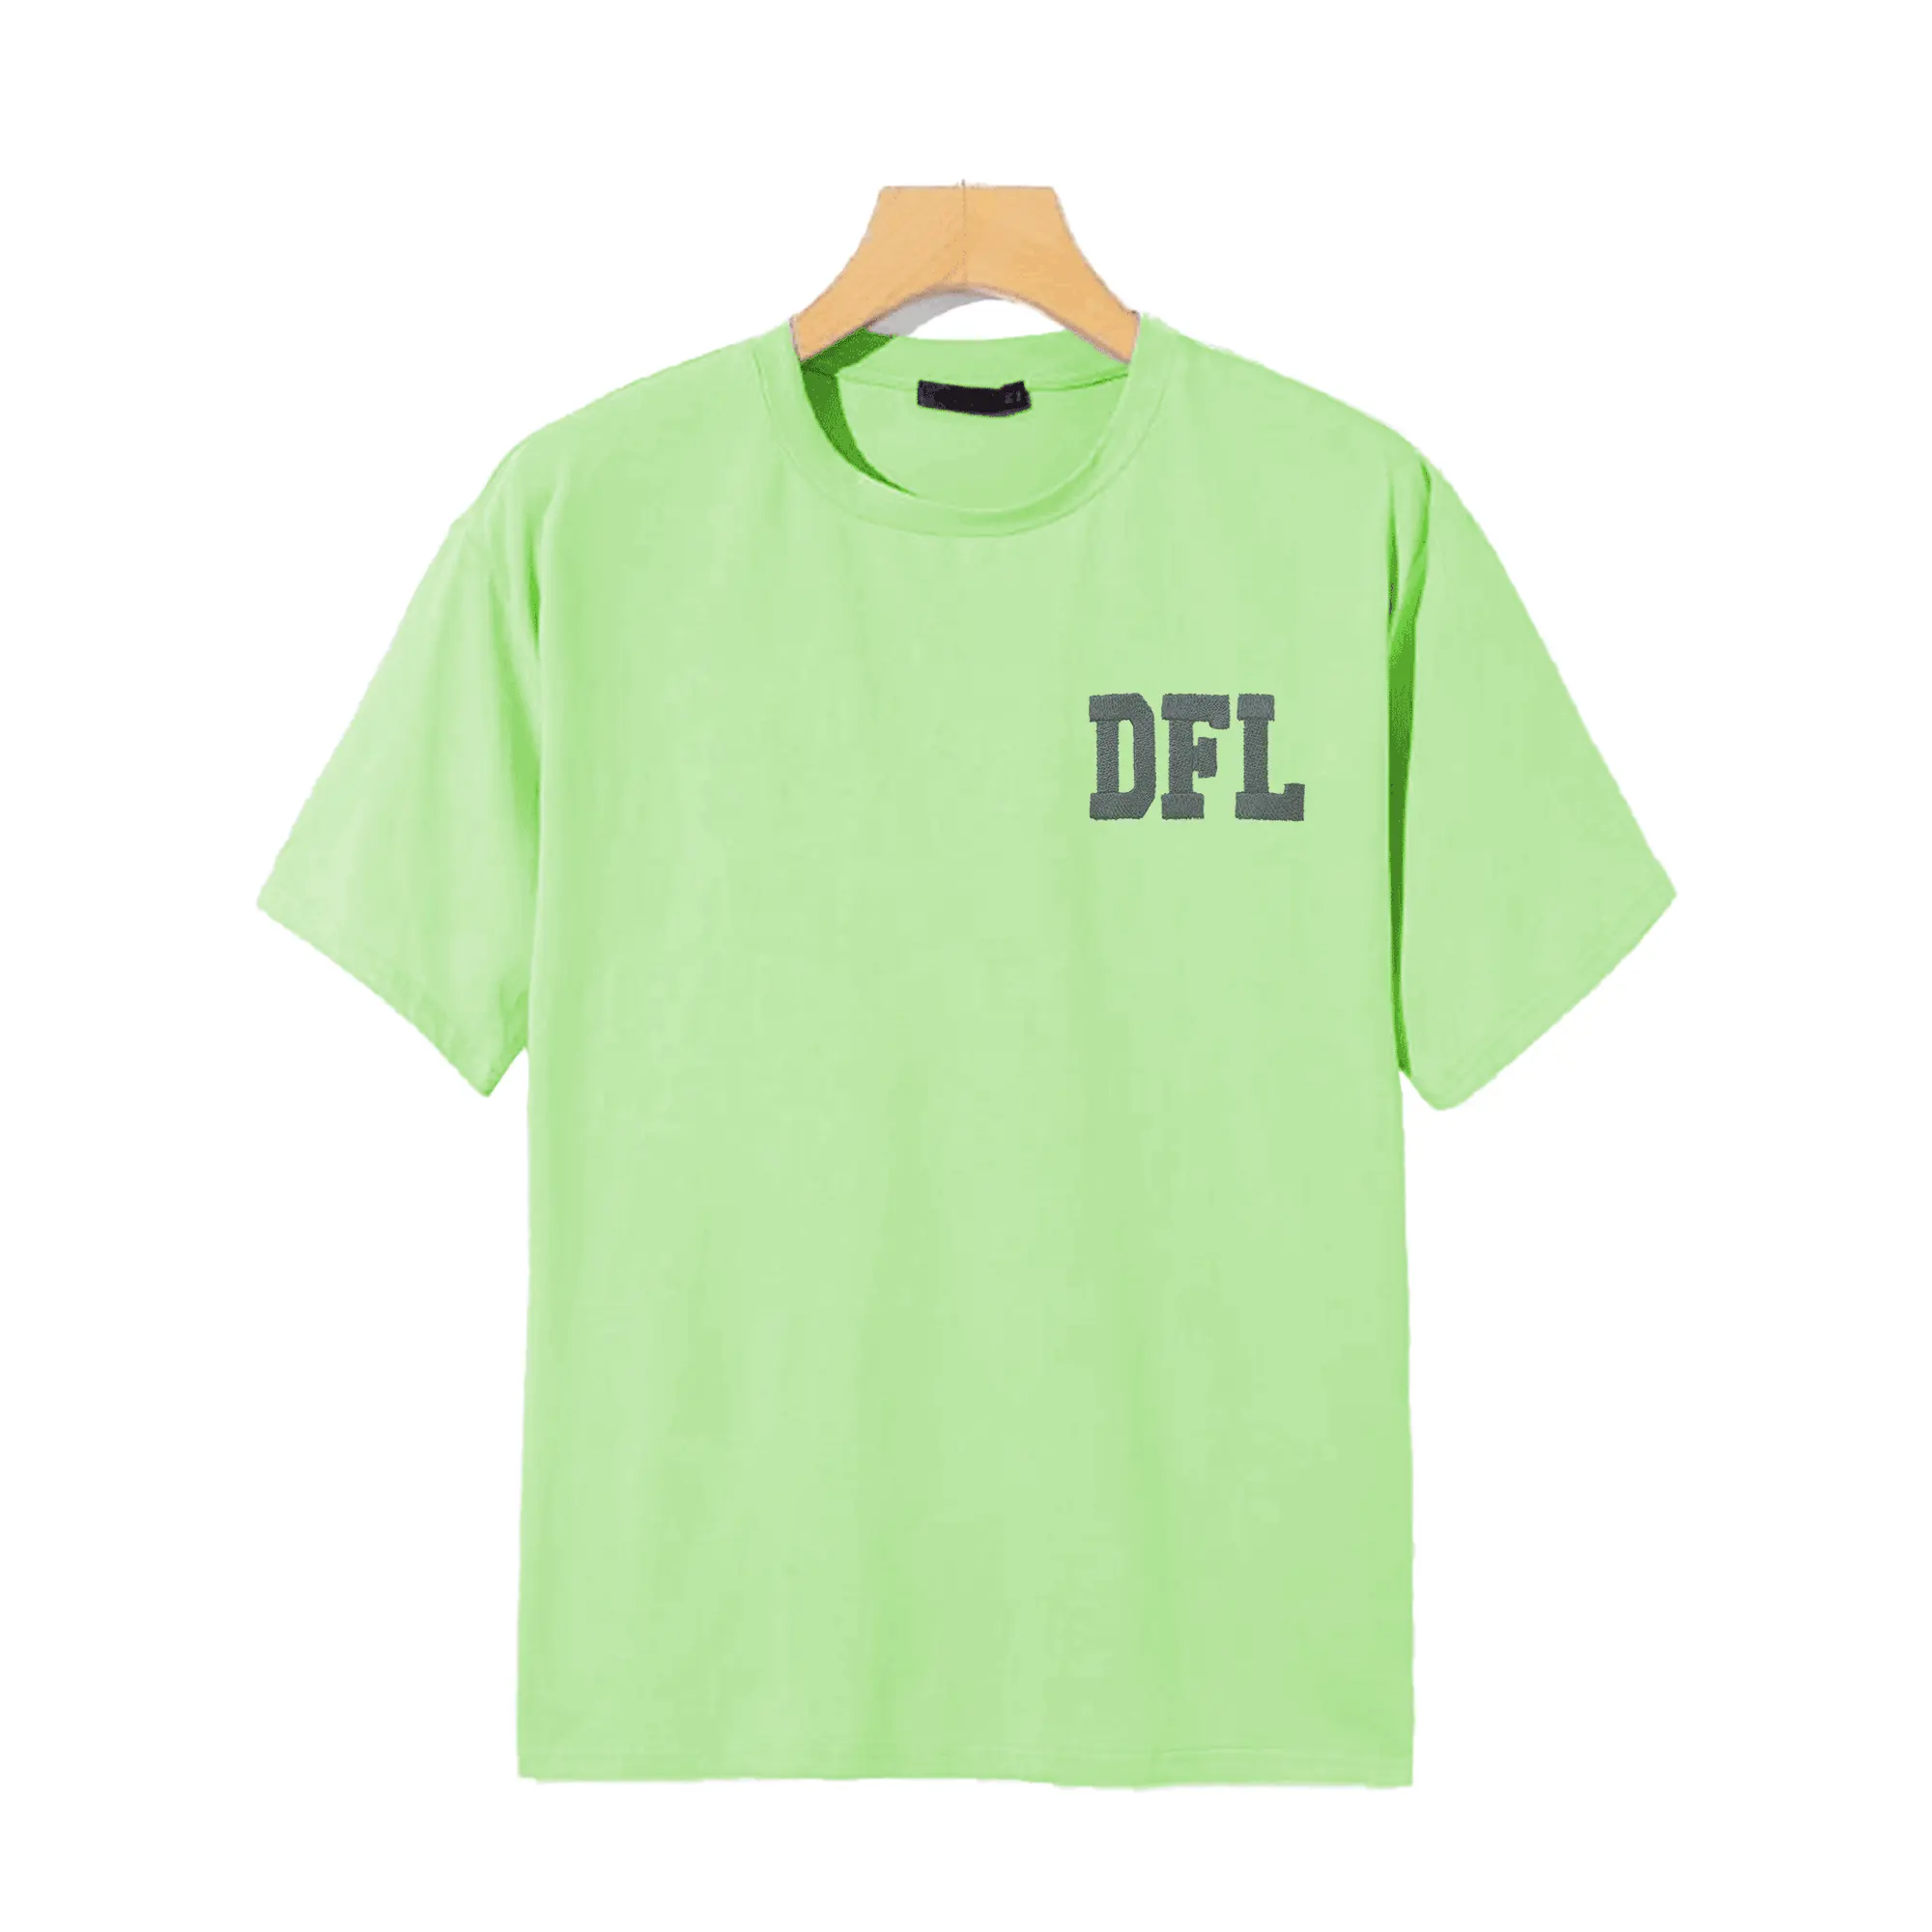 Fabrika OEM Premium kalite kadın T Shirt artı boyutu boş tasarım nakış logosu ucuz fiyat toptan kadın rahat T Shirt